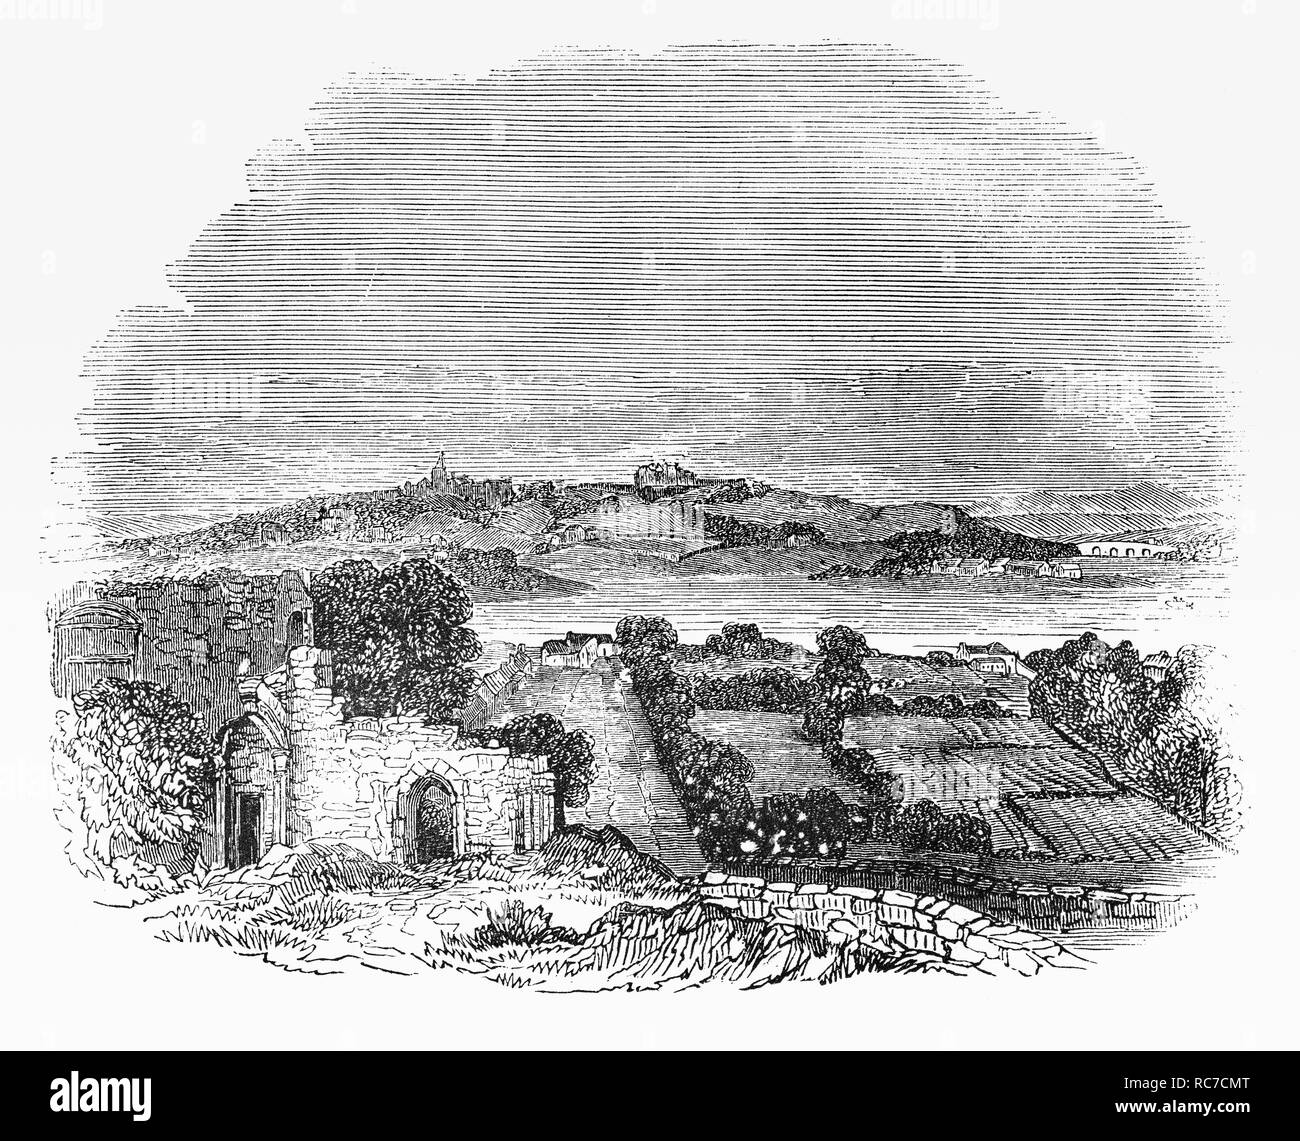 Abbazia di Cambuskenneth è una rovina il monastero agostiniano situato su di un'area di terra racchiusa da un meandro del fiume Forth vicino a Stirling in Scozia. Essa è stata fondata per ordine di David ho intorno all'anno 1140. L'abbazia cadde in disuso durante la riforma scozzese. Dal 1559 vi sono stati alcuni monaci vi rimanenti, e l'abbazia fu chiuso e la maggior parte degli edifici saccheggiato e bruciato. L'abbazia fu posto sotto la giurisdizione del governatore militare del Castello di Stirling, che avevano molto di muratura rimosso e utilizzato in progetti di costruzione per il castello. Foto Stock